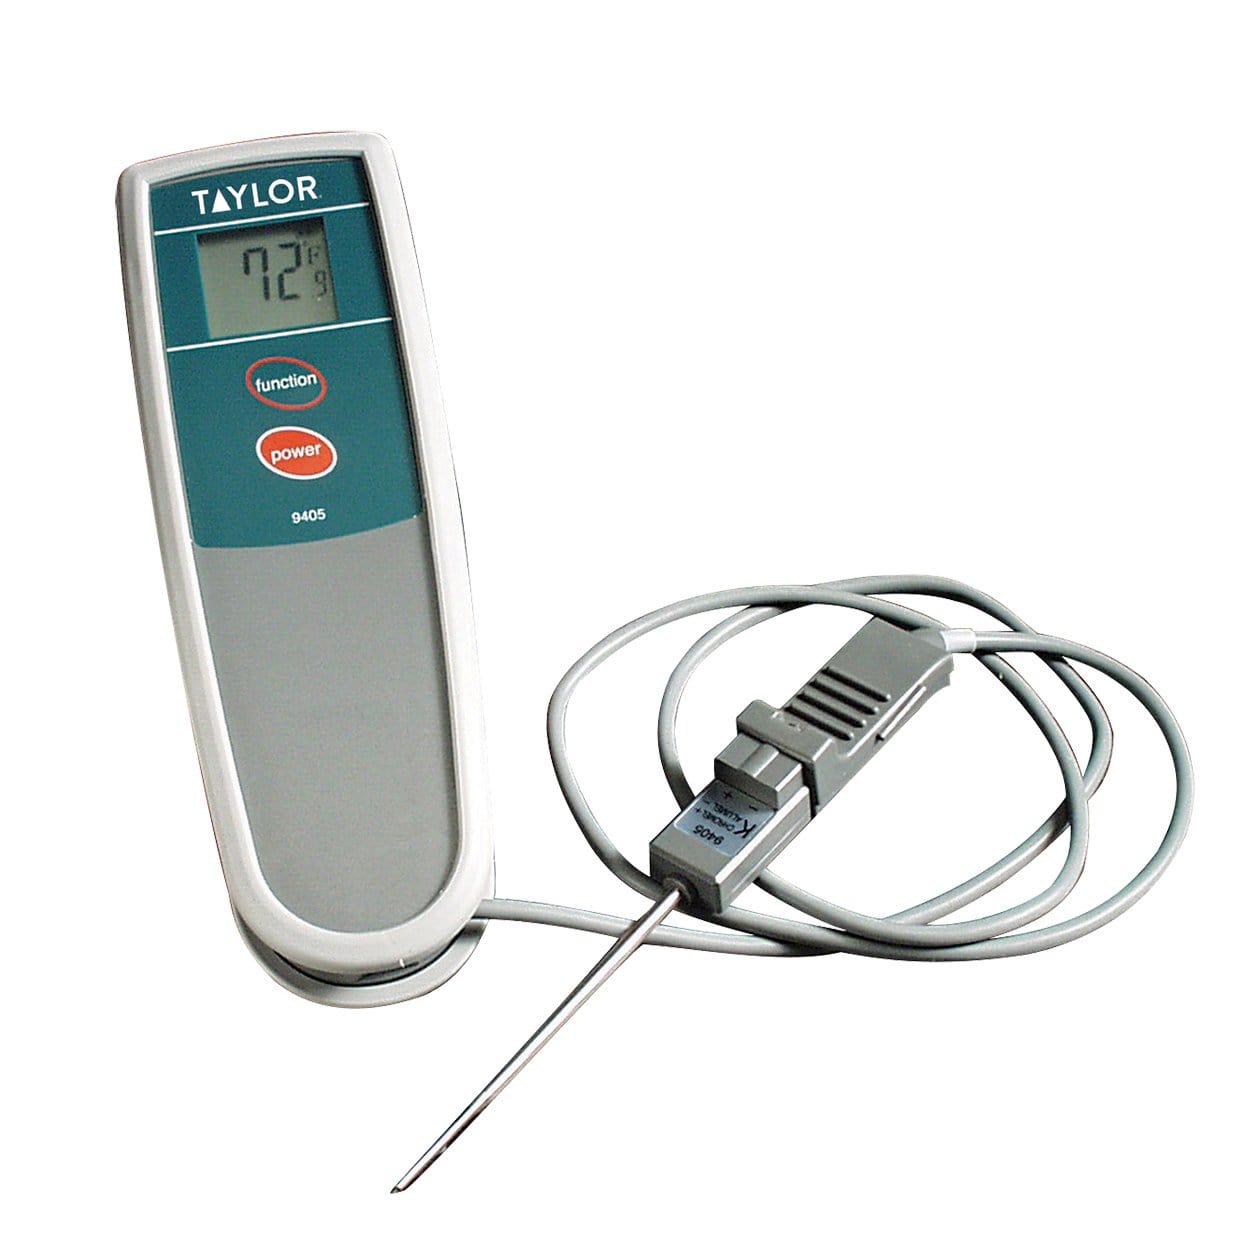 Therma K Metal Waterproof Thermometer